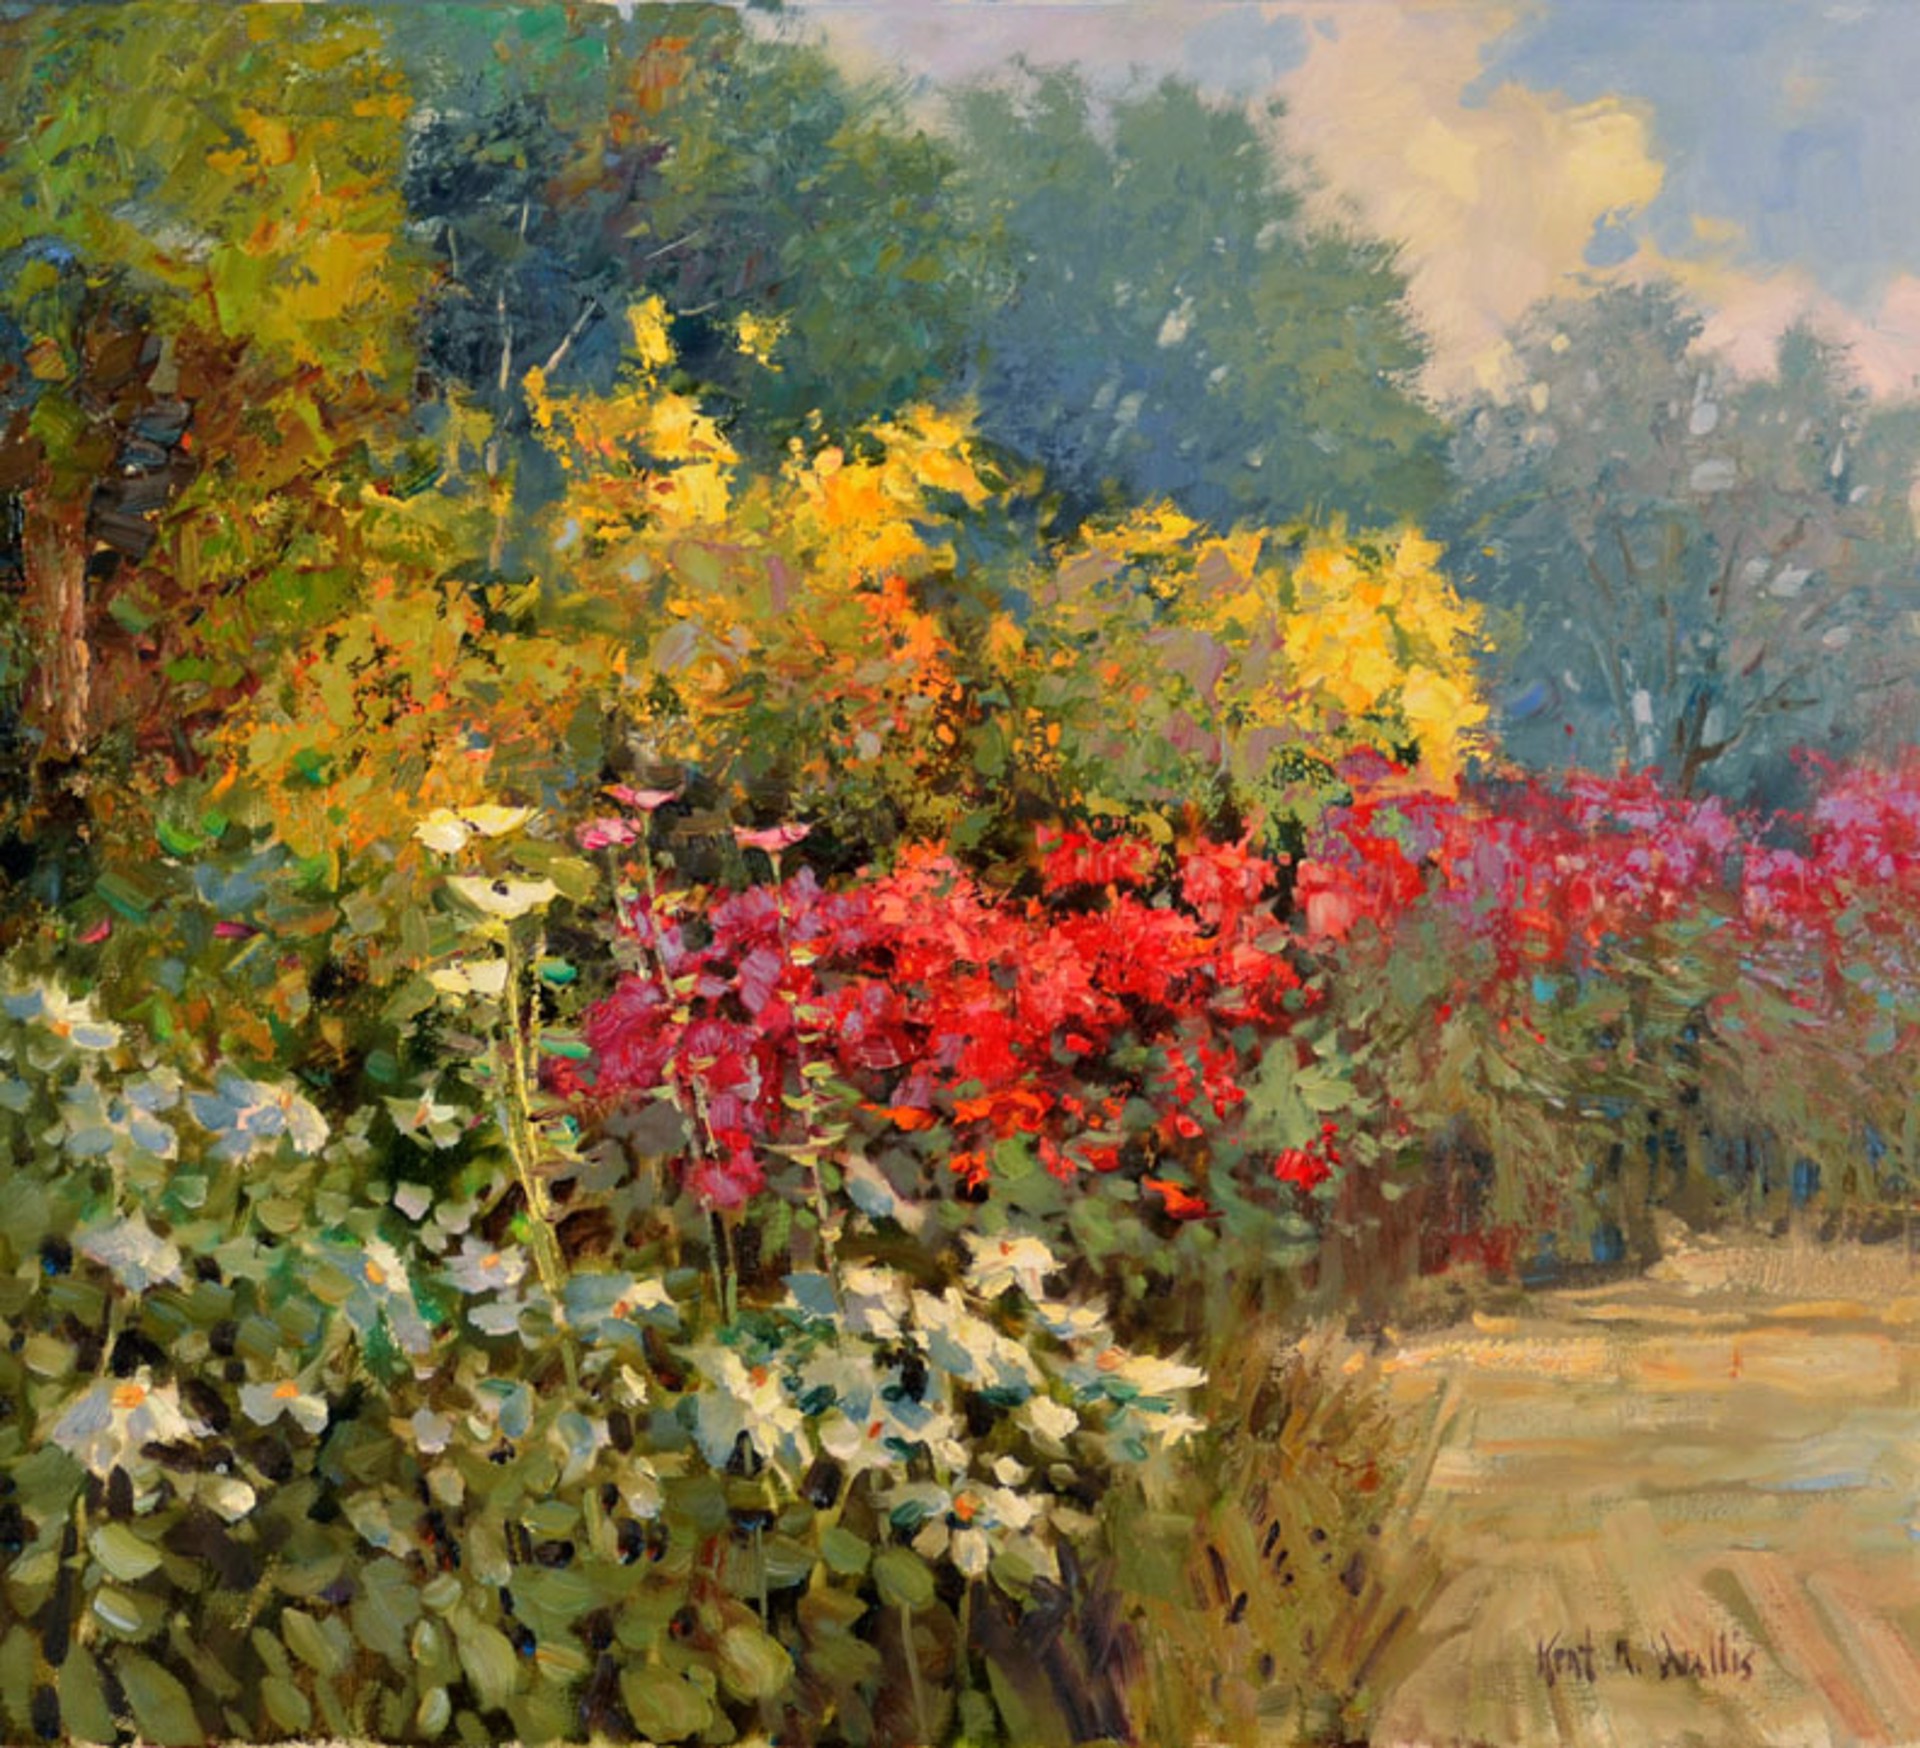 Lovable Garden by Kent R. Wallis